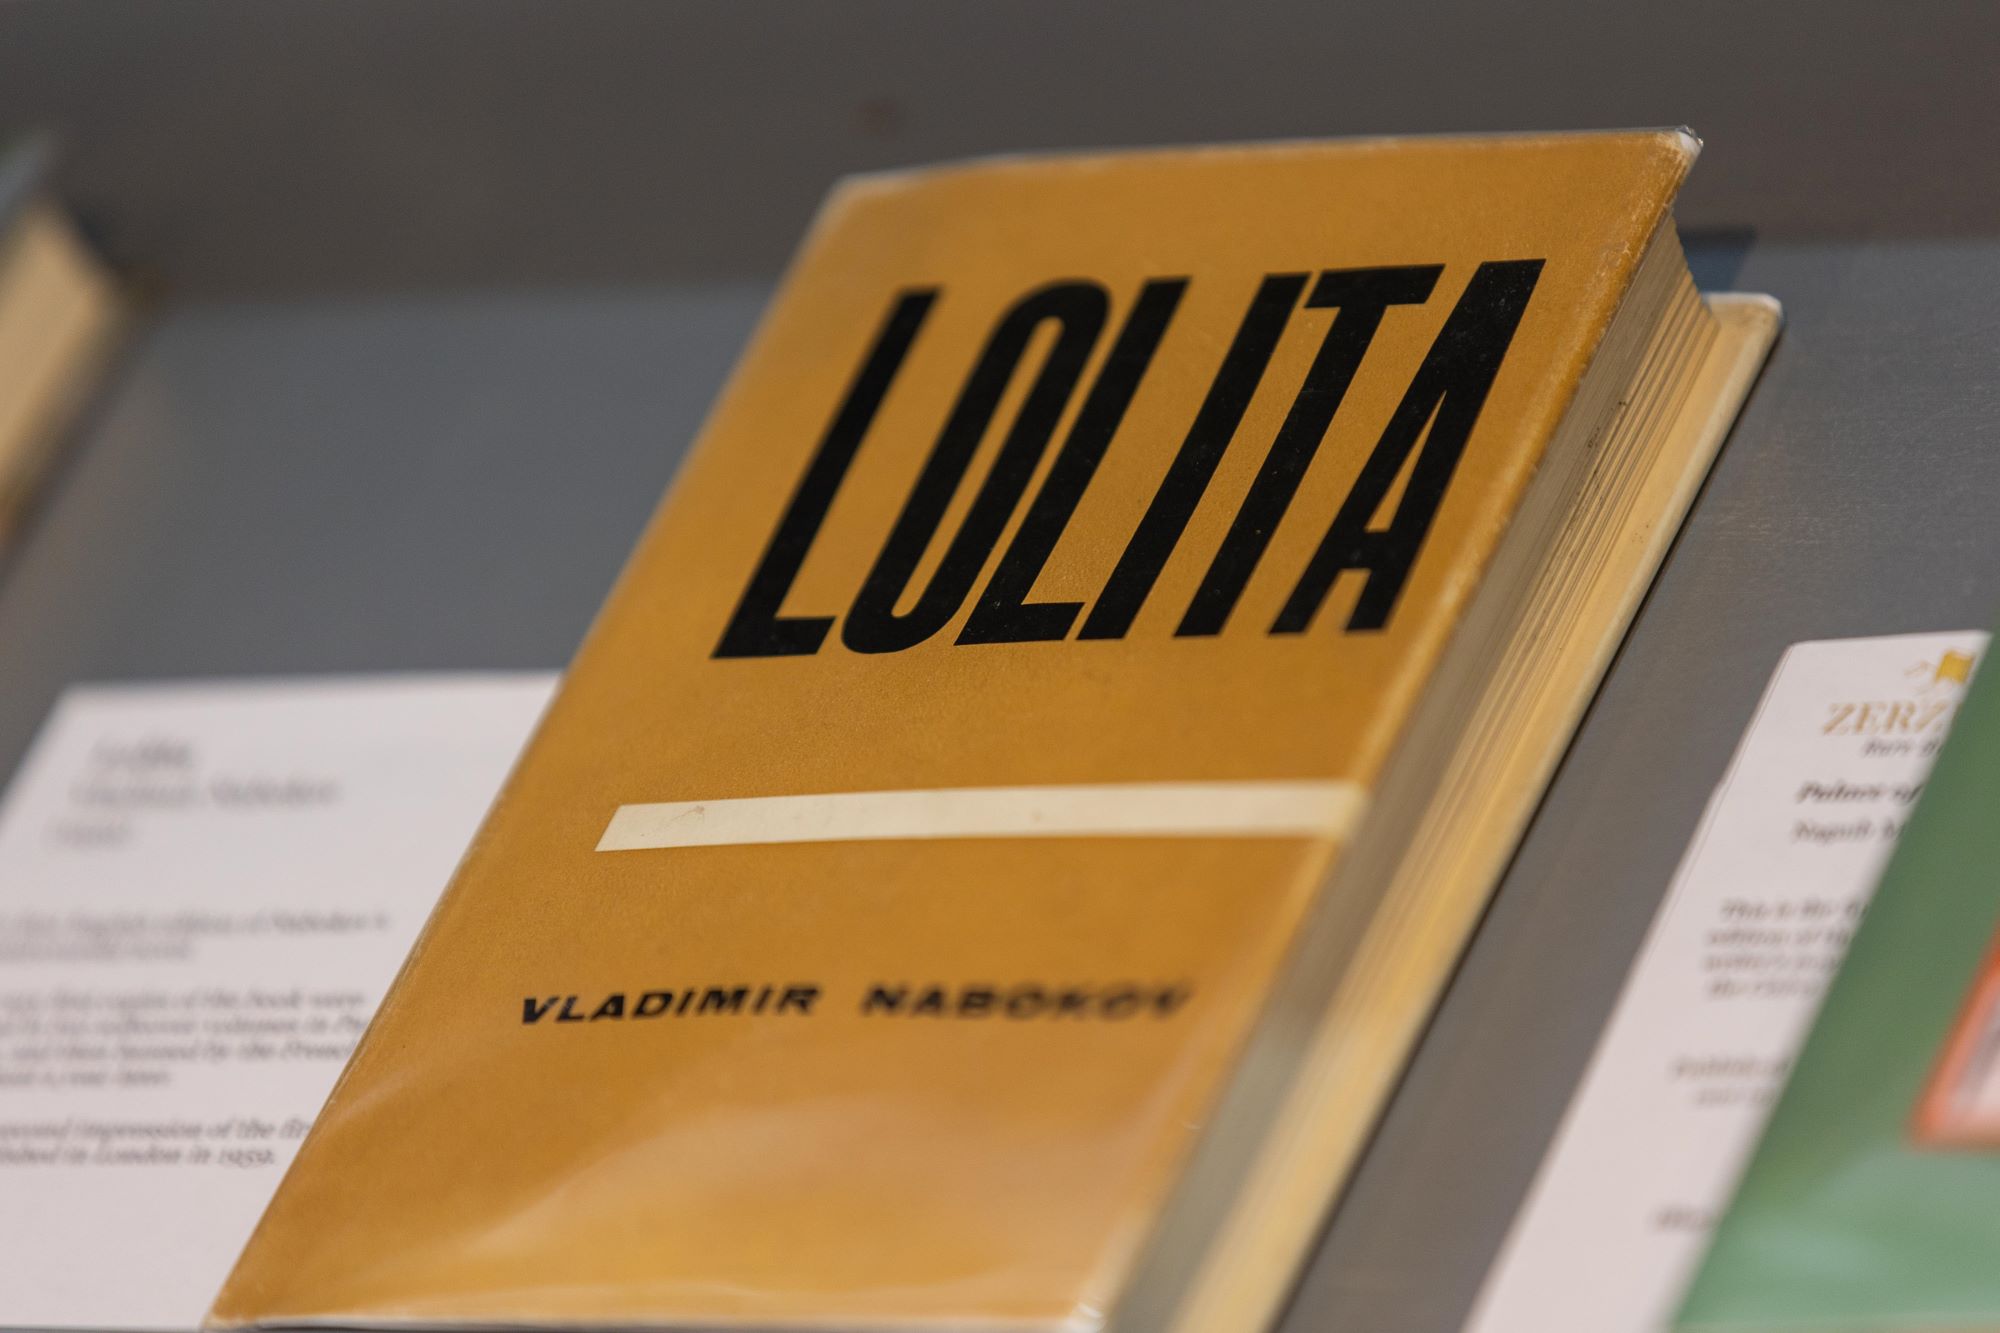 الطبعة الأولى من كتاب لوليتا